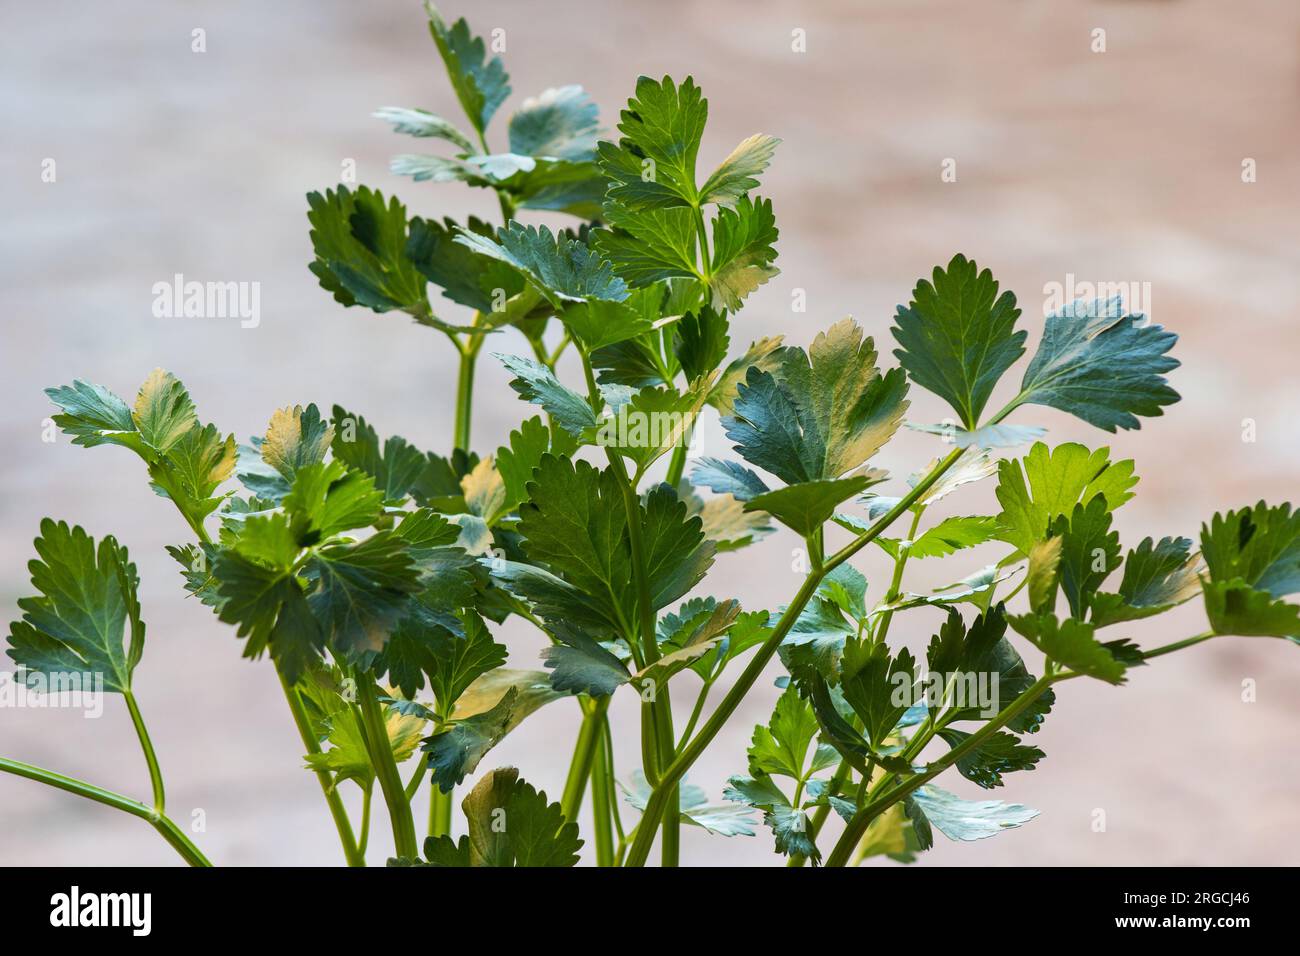 Sellerieblätter (Apium graveolens) auf neutralem Hintergrund Stockfoto